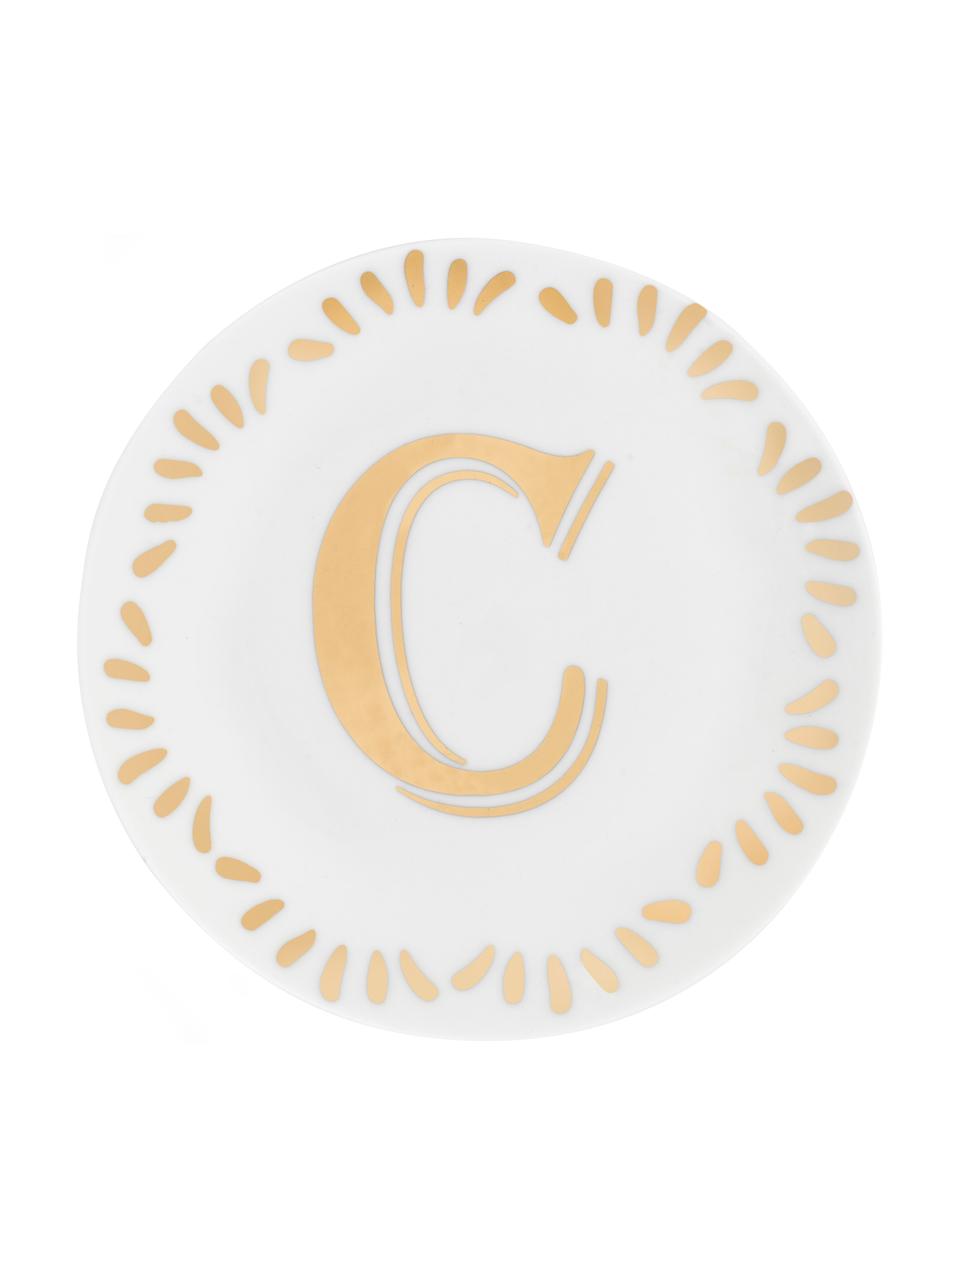 Petite assiette à dessert porcelaine Yours (variantes de A à Z), Blanc, couleur dorée